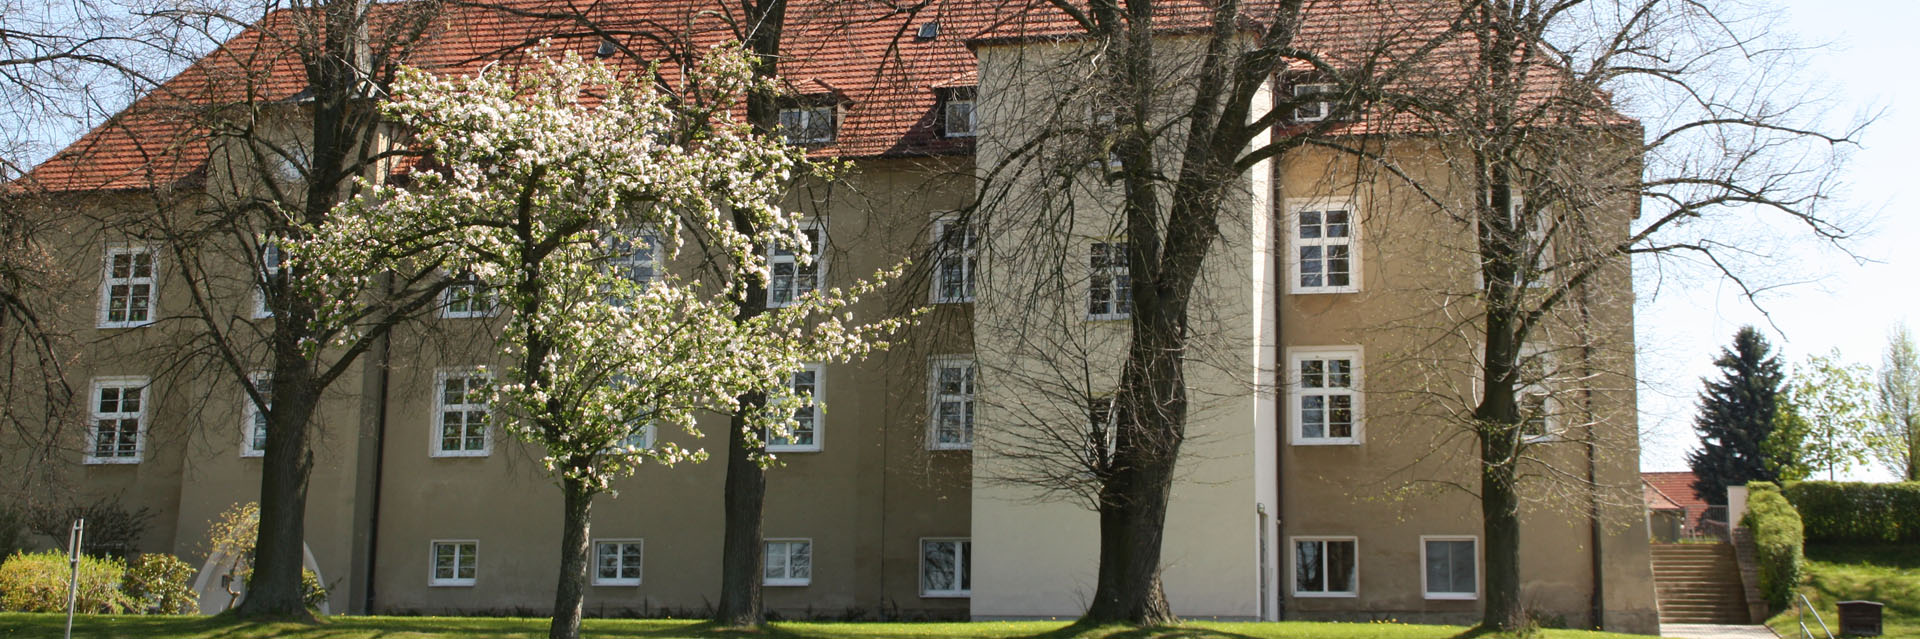 Gemeinde Großpostwitz - Lessingschule